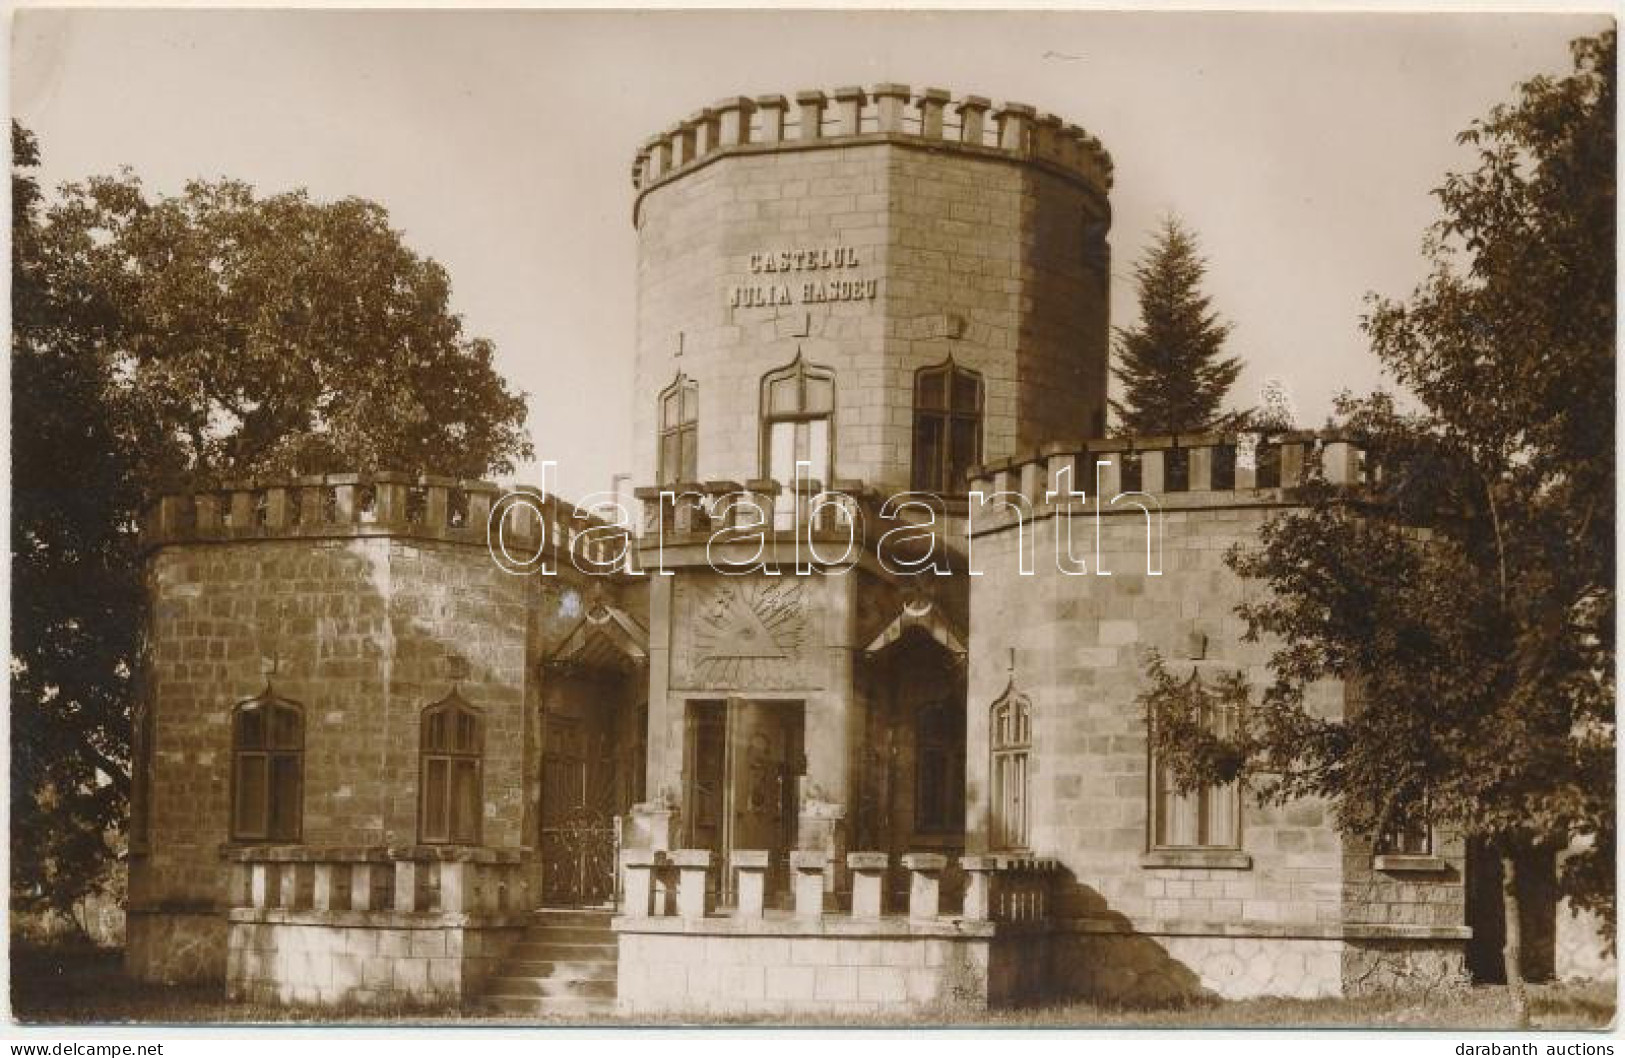 * T2/T3 1932 Campina, Castelul Julia Hasdeu / Castle (EK) - Non Classés